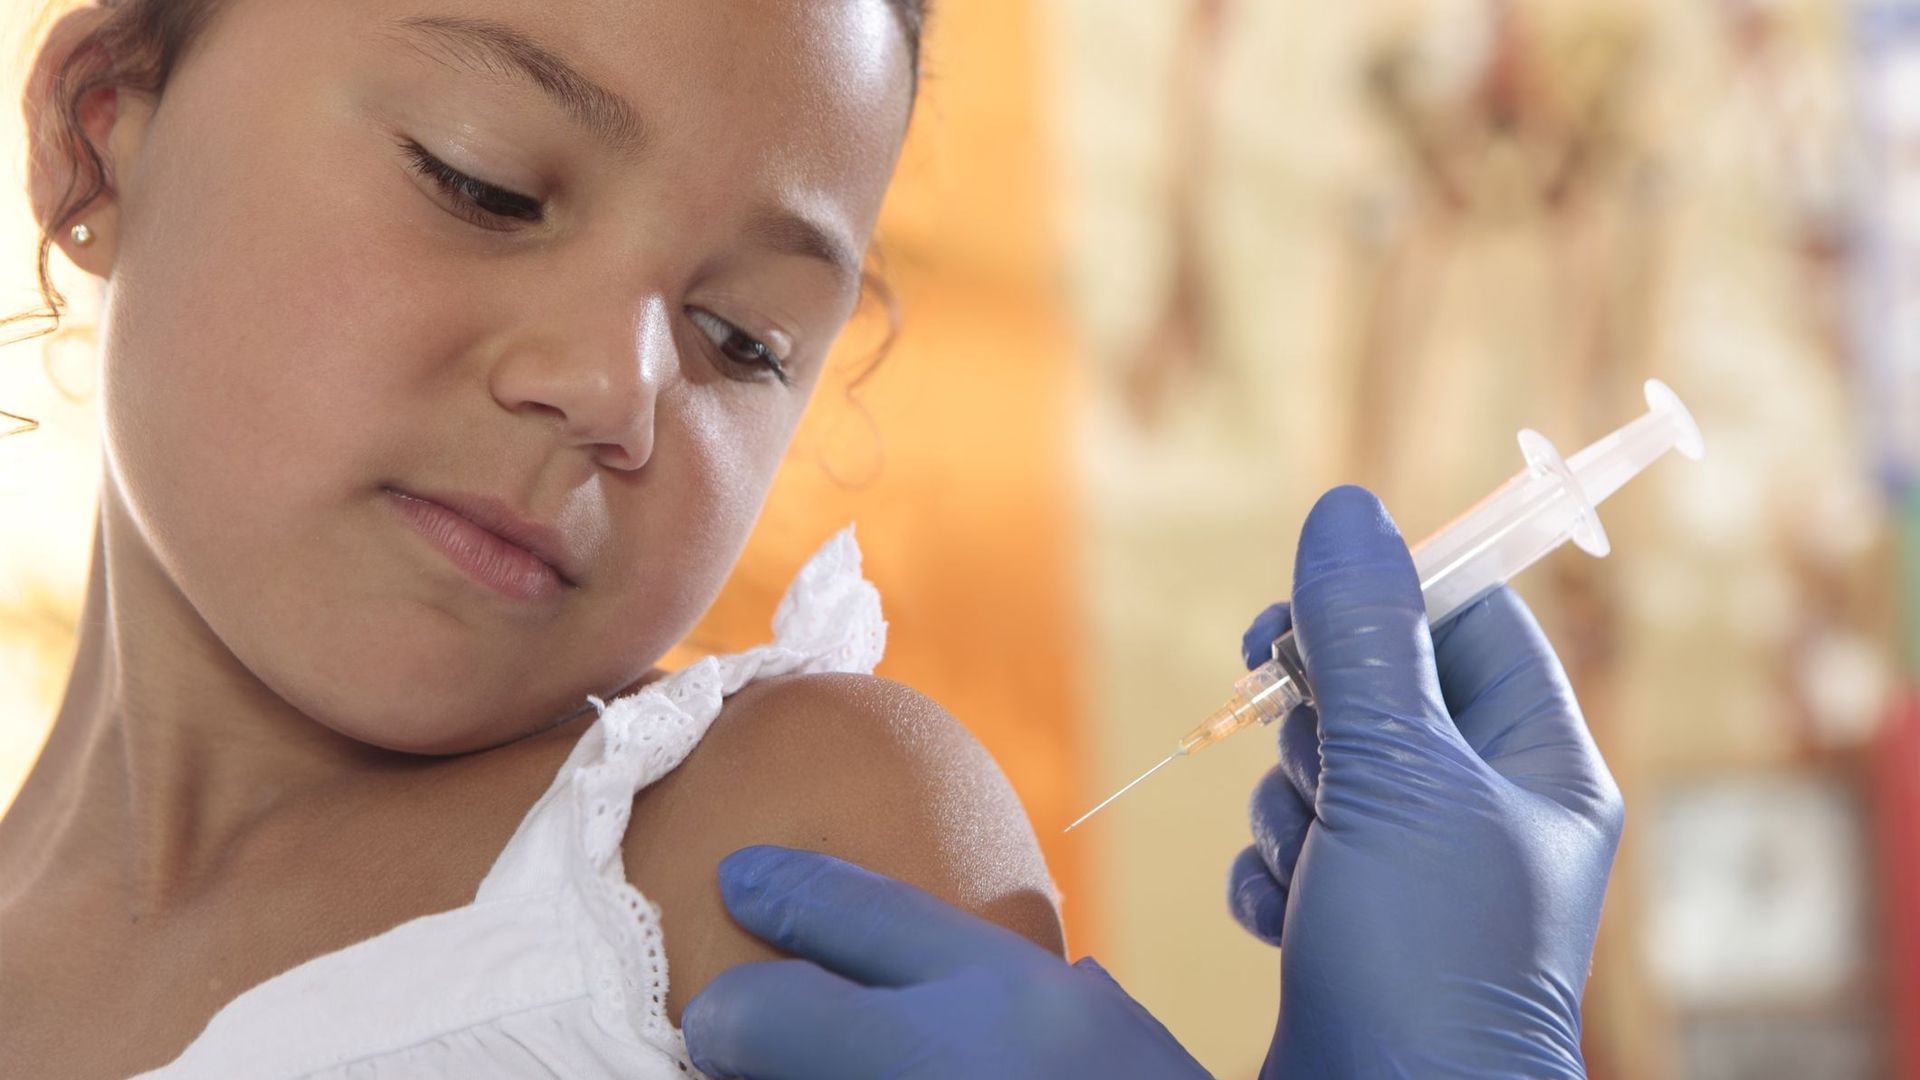 A cause du coronavirus, les enfants moins vaccinés (Unicef)